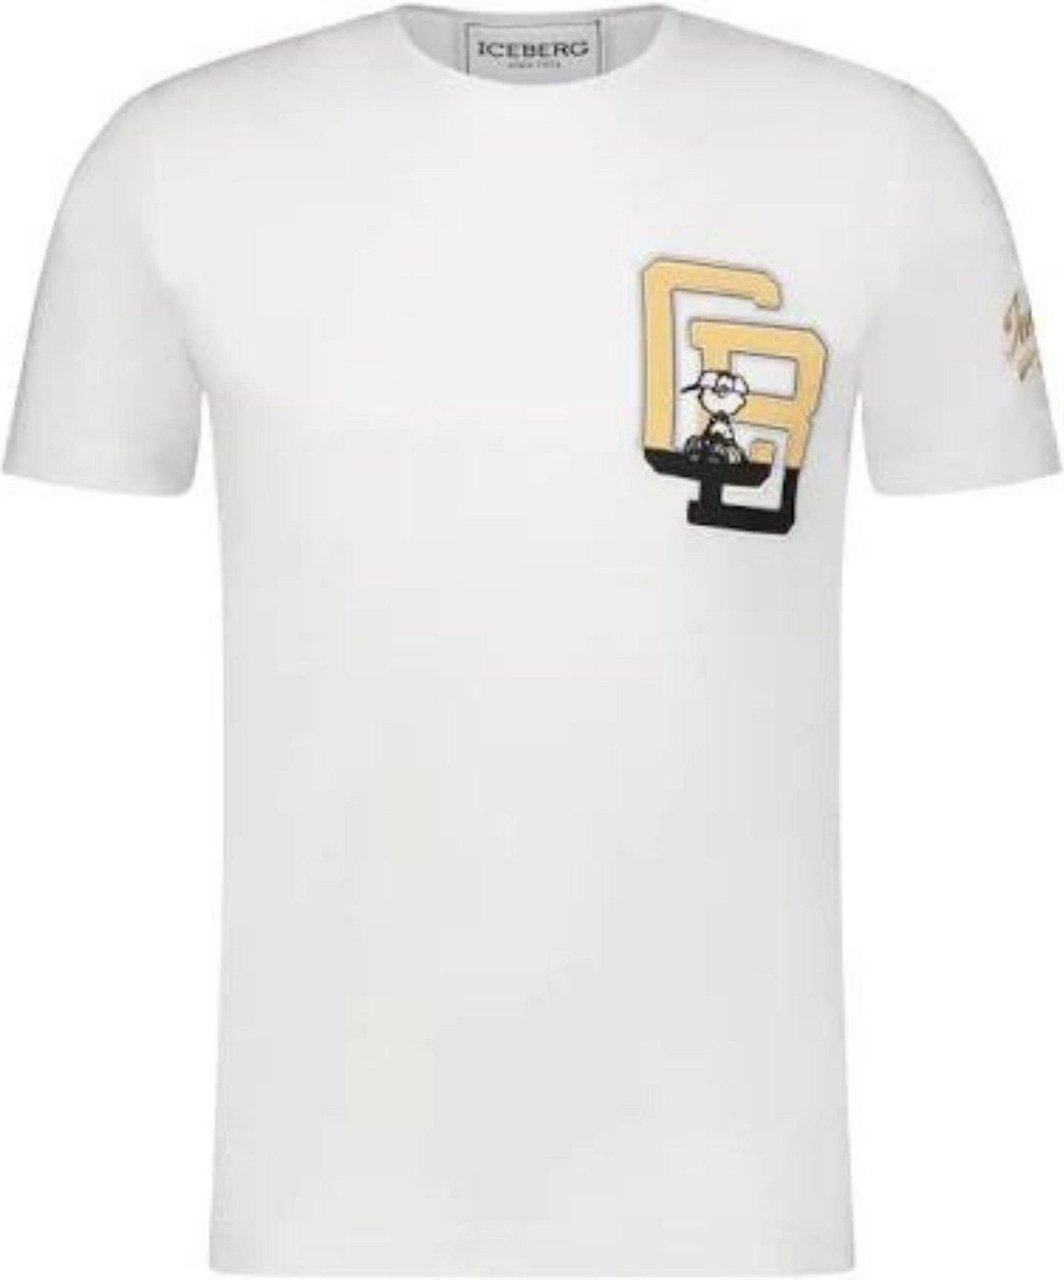 Iceberg T-shirt Jersey White